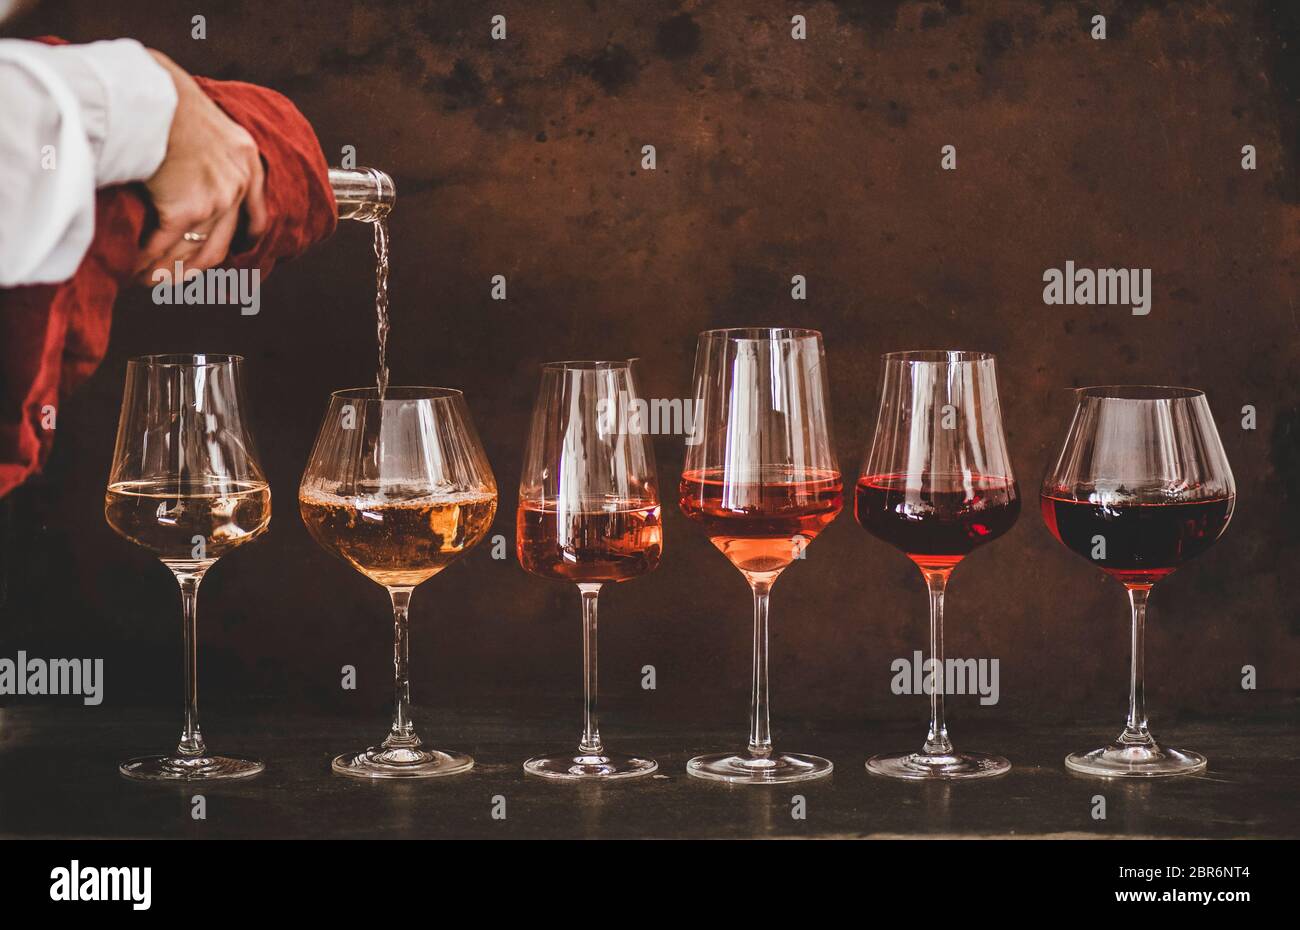 Nuancen von Roséwein in Gläsern, die in einer Linie von hellen bis dunklen Farben platziert sind und Frauen Hand Gießen Wein von Flasche zu Glas, rostig brauner Backgro Stockfoto